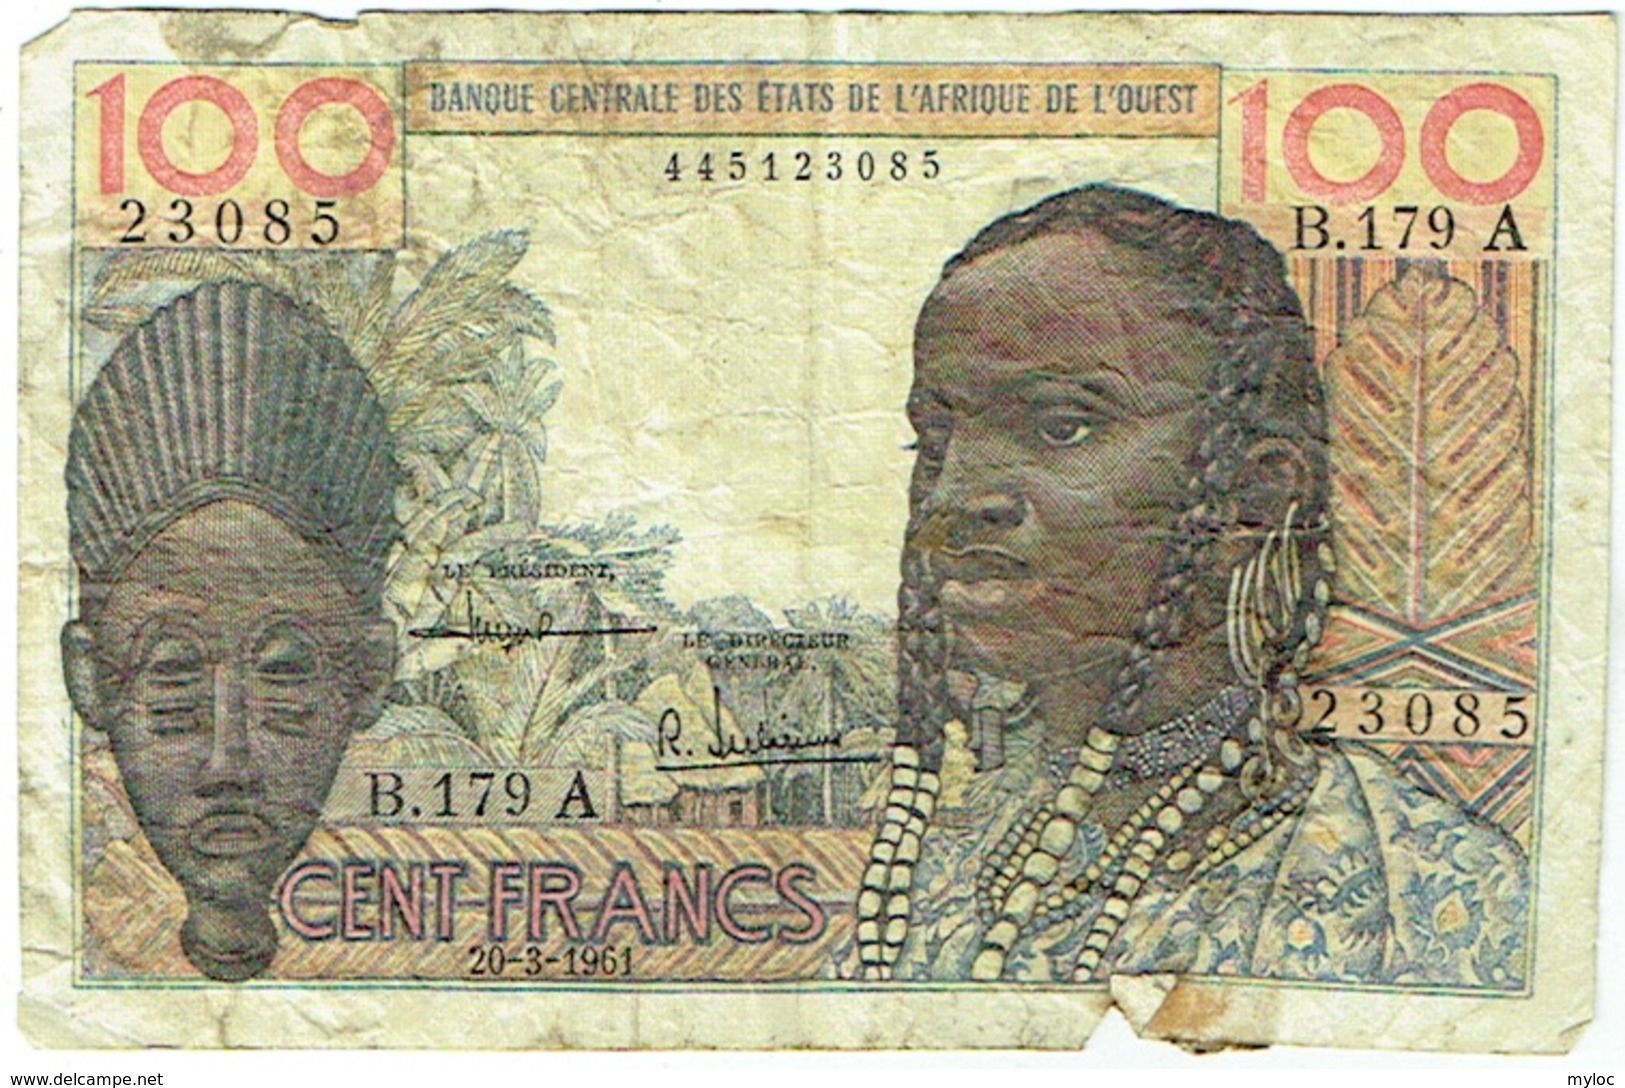 Banque Centrale Etats Afrique De L'Ouest. 100 (Cent) Francs. 20-3-1961 - Westafrikanischer Staaten